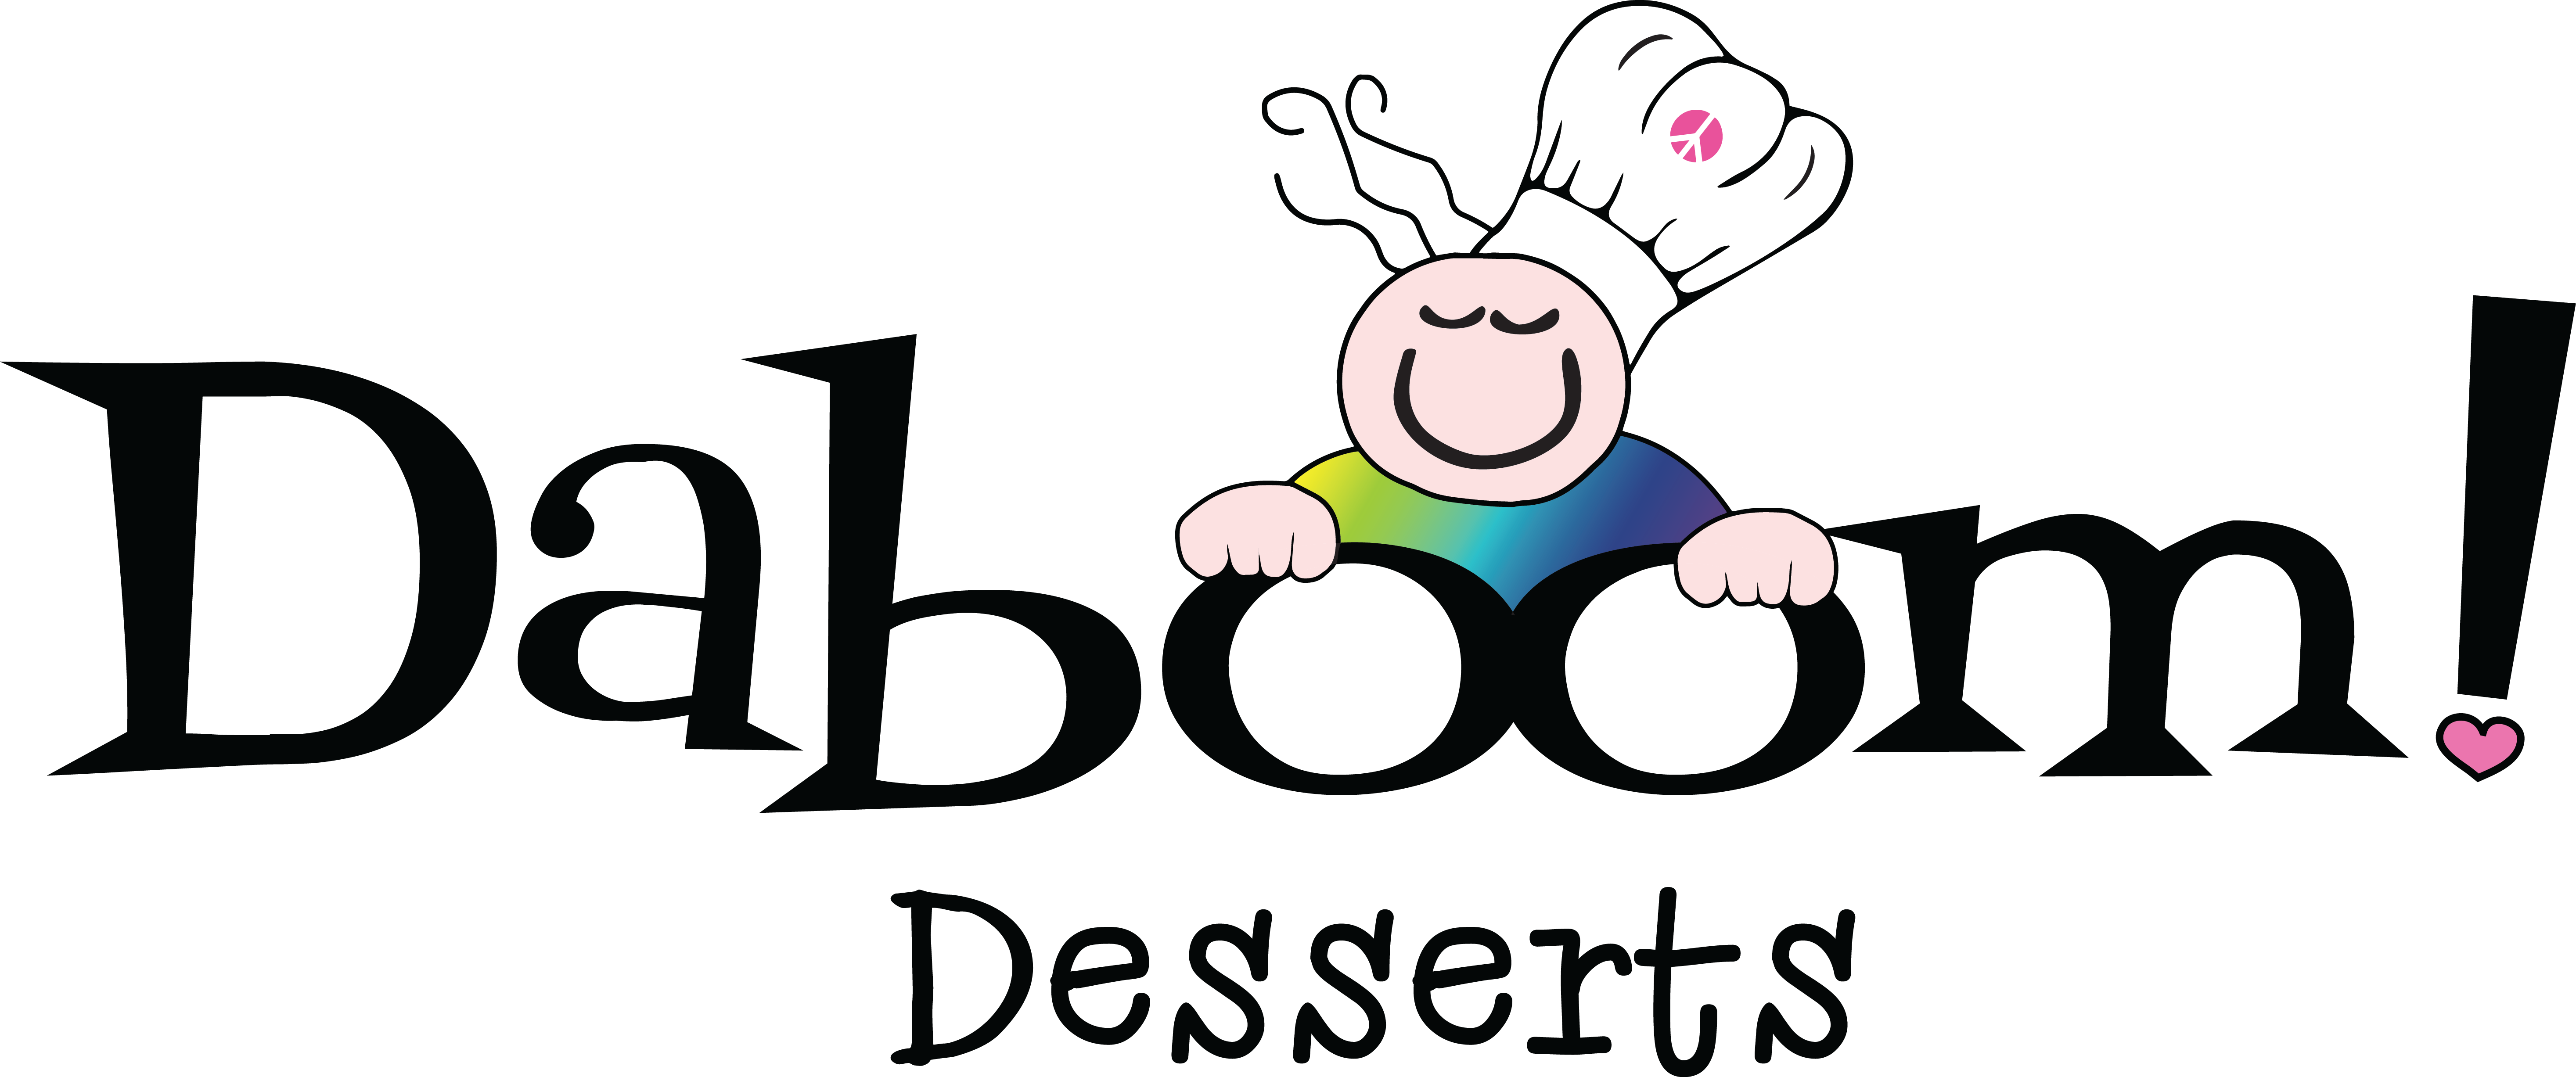 Daboom Dessert Logo (5868x2454)